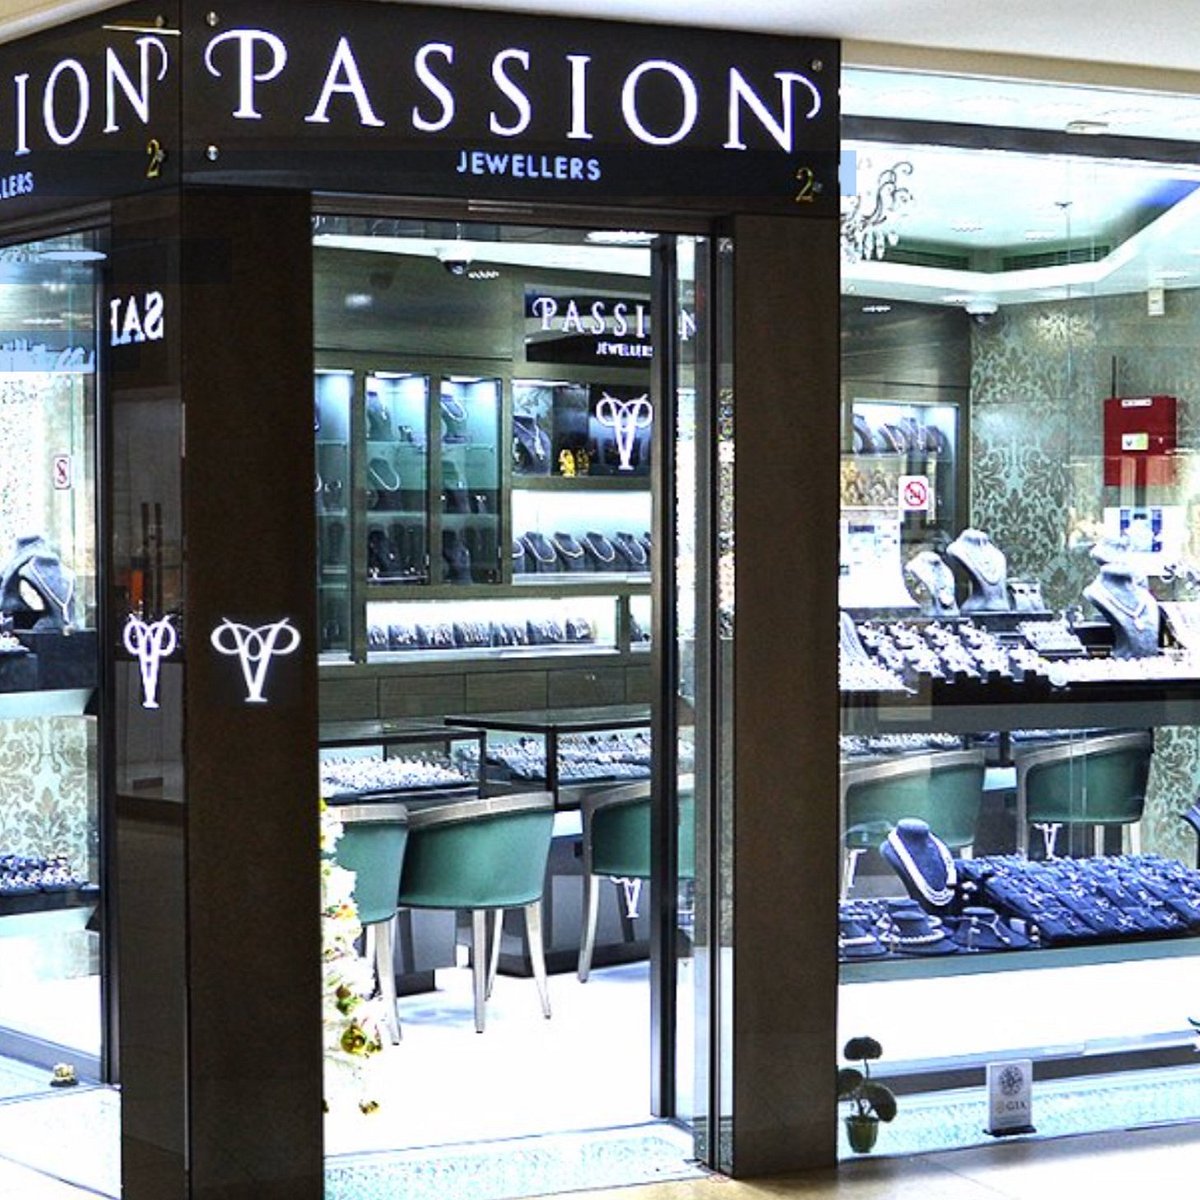 Jewelry Store in Dubai - Dubai Mall